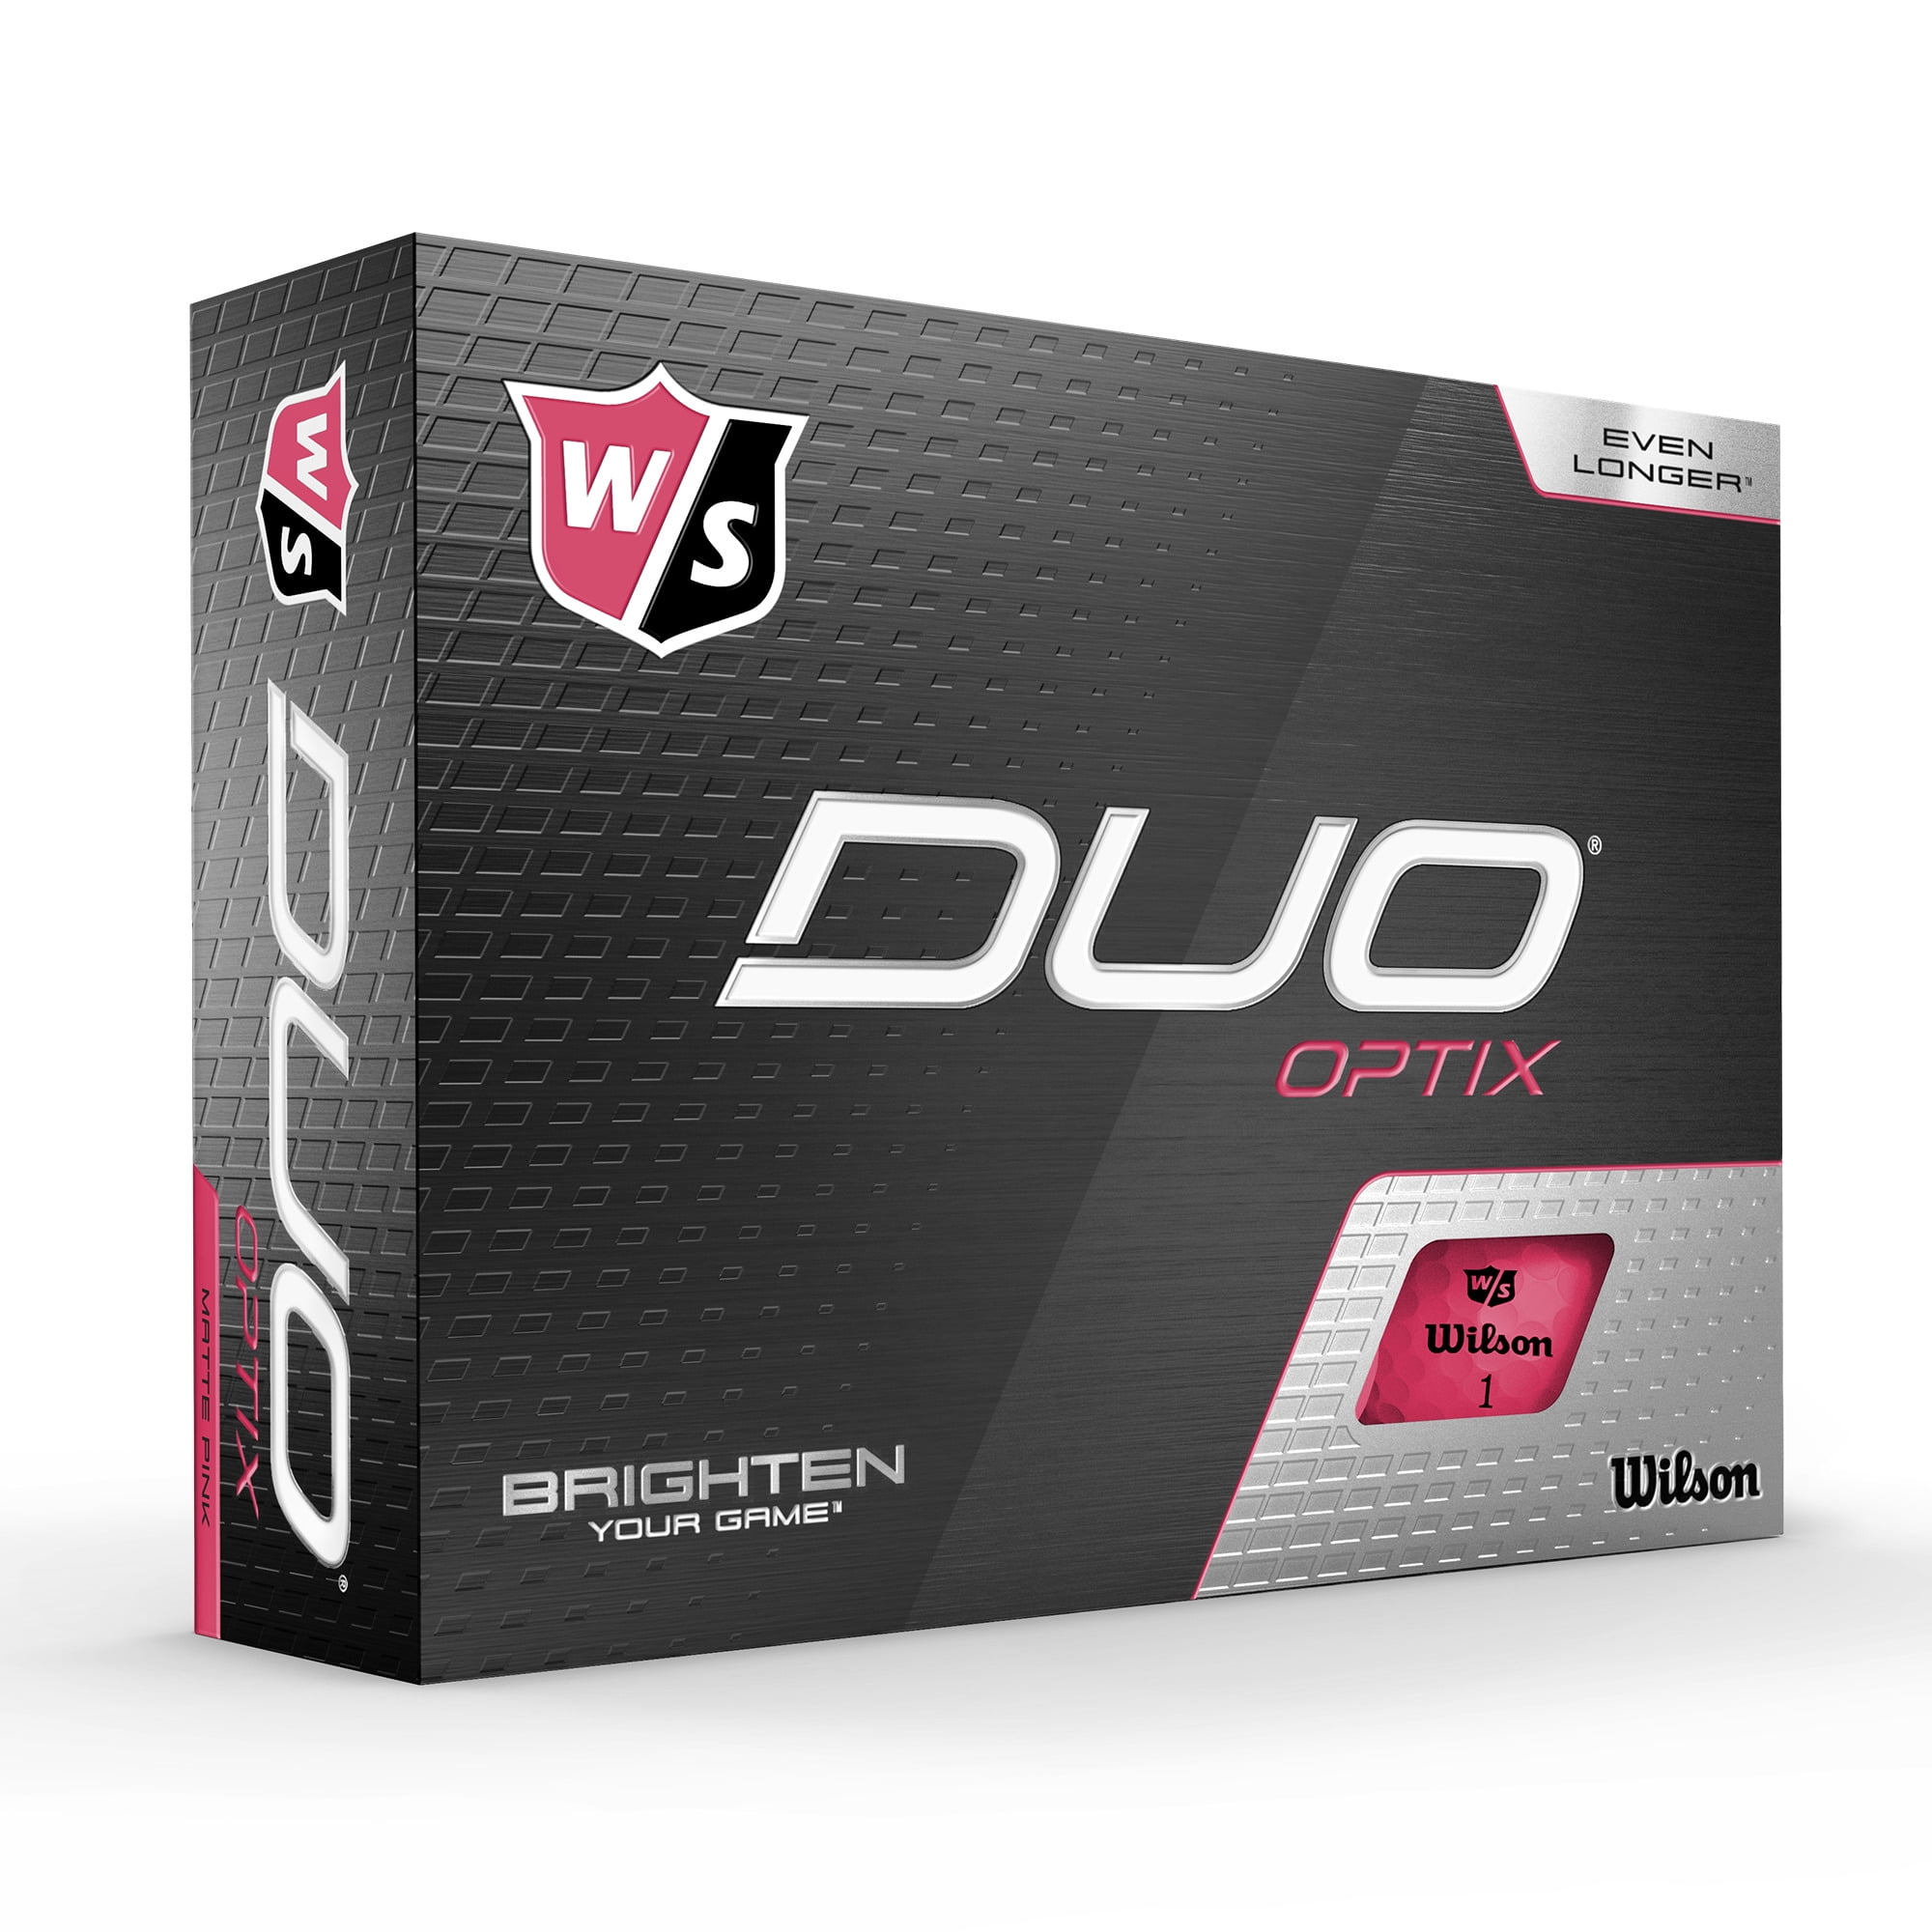 Wilson Duo Optix Golf Ball, Pink, 12-ball pack - Walmart.com